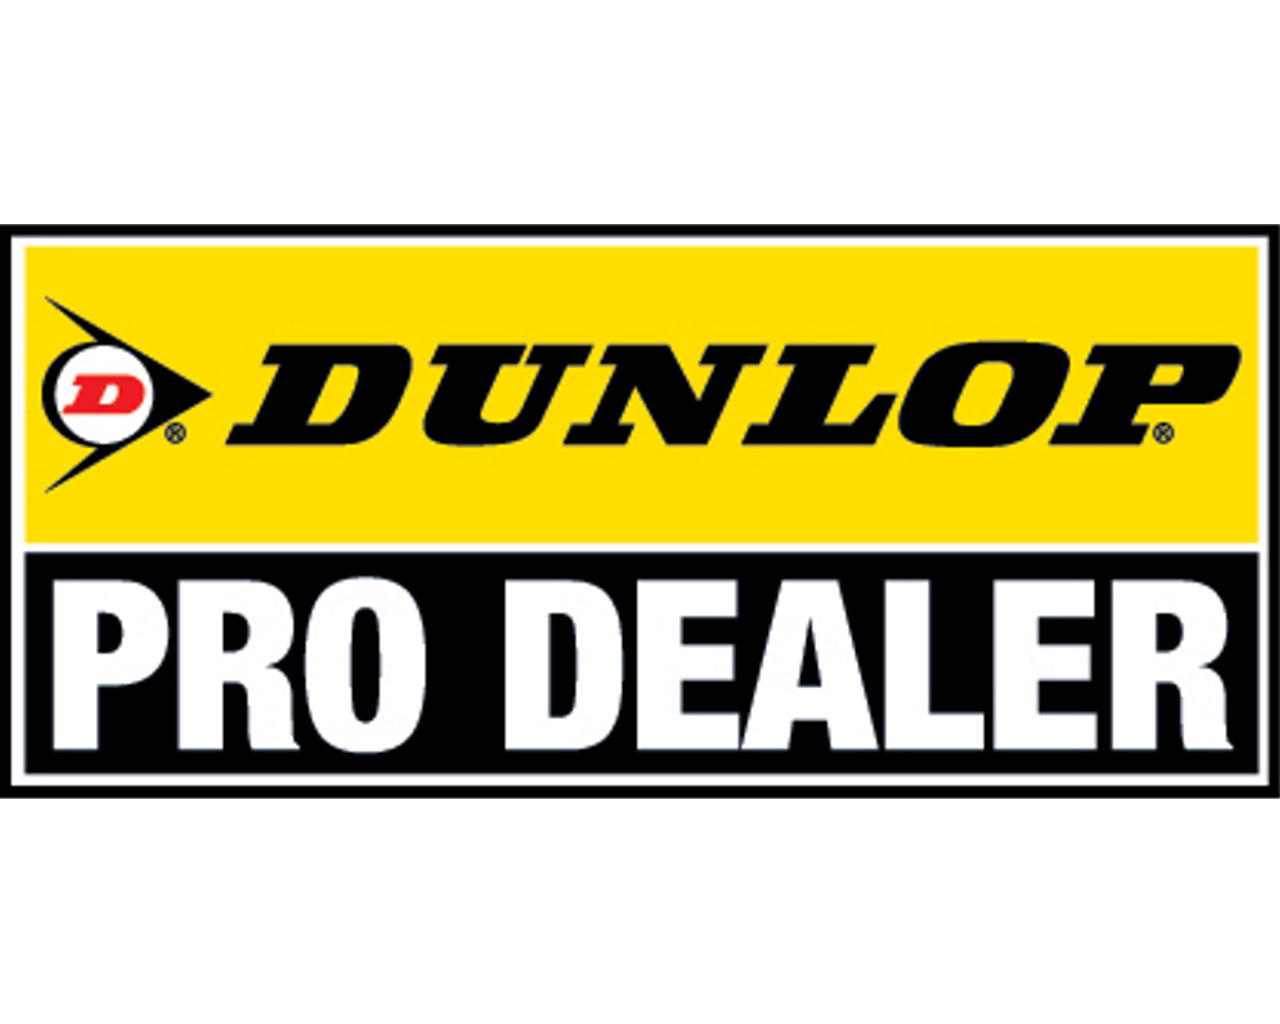 Dunlop 90/100-14 Geomax MX53 Off-Road MX Tire Rear 873-0652